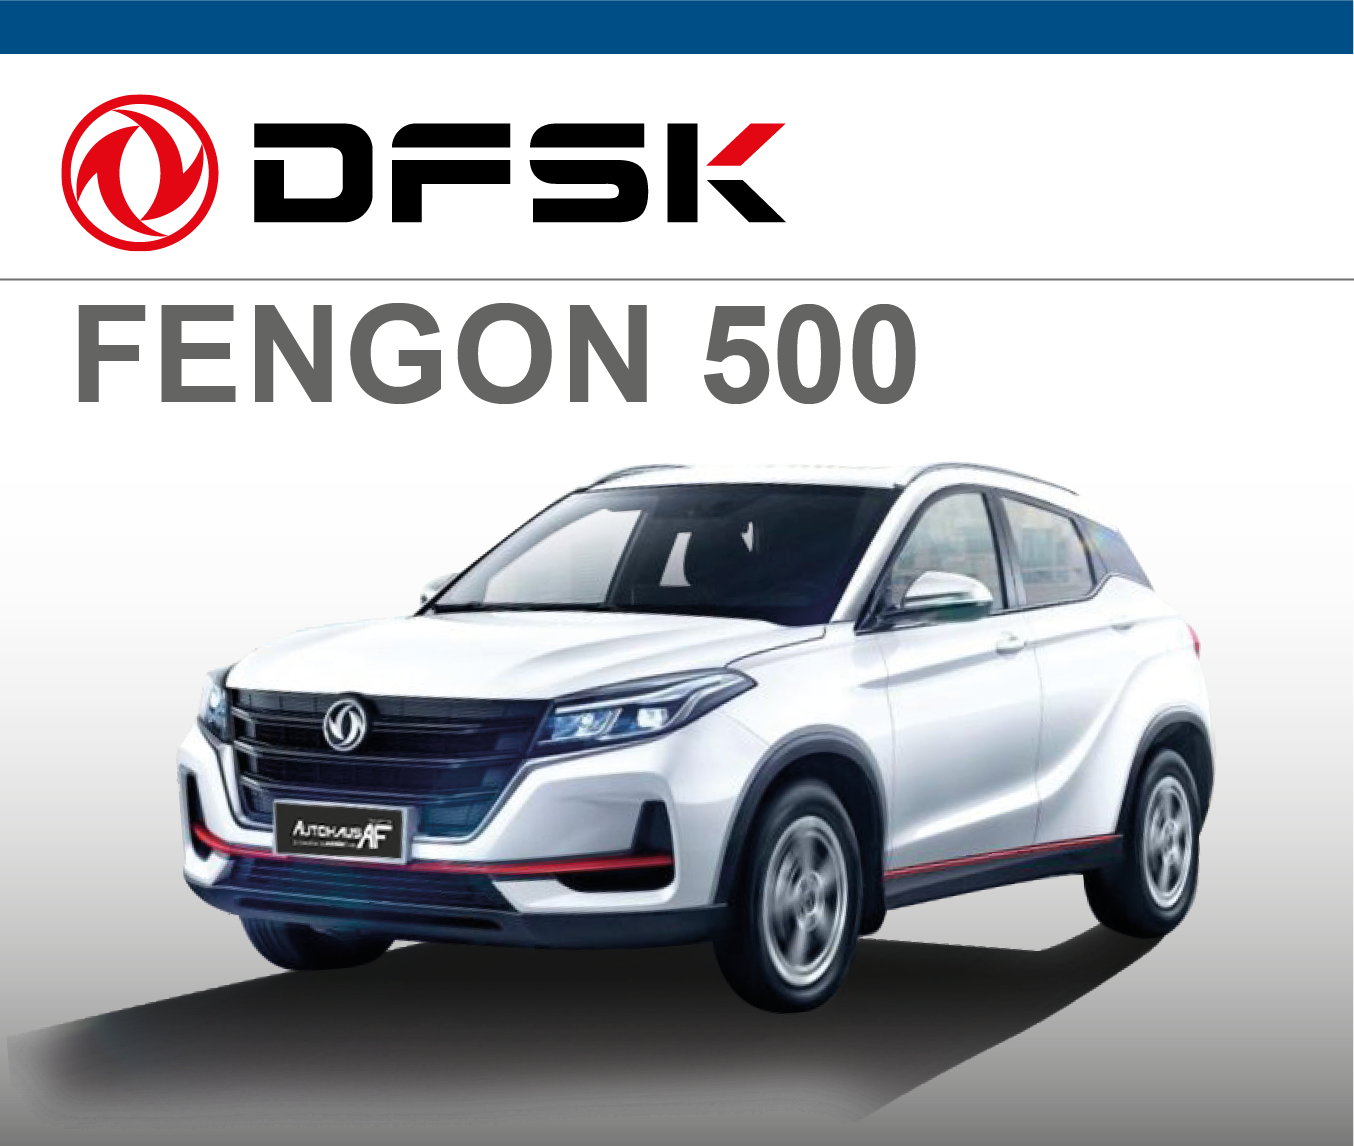 DFSK Fengon 500 | Autohaus AF | Neunkirchen | Jochem Gruppe